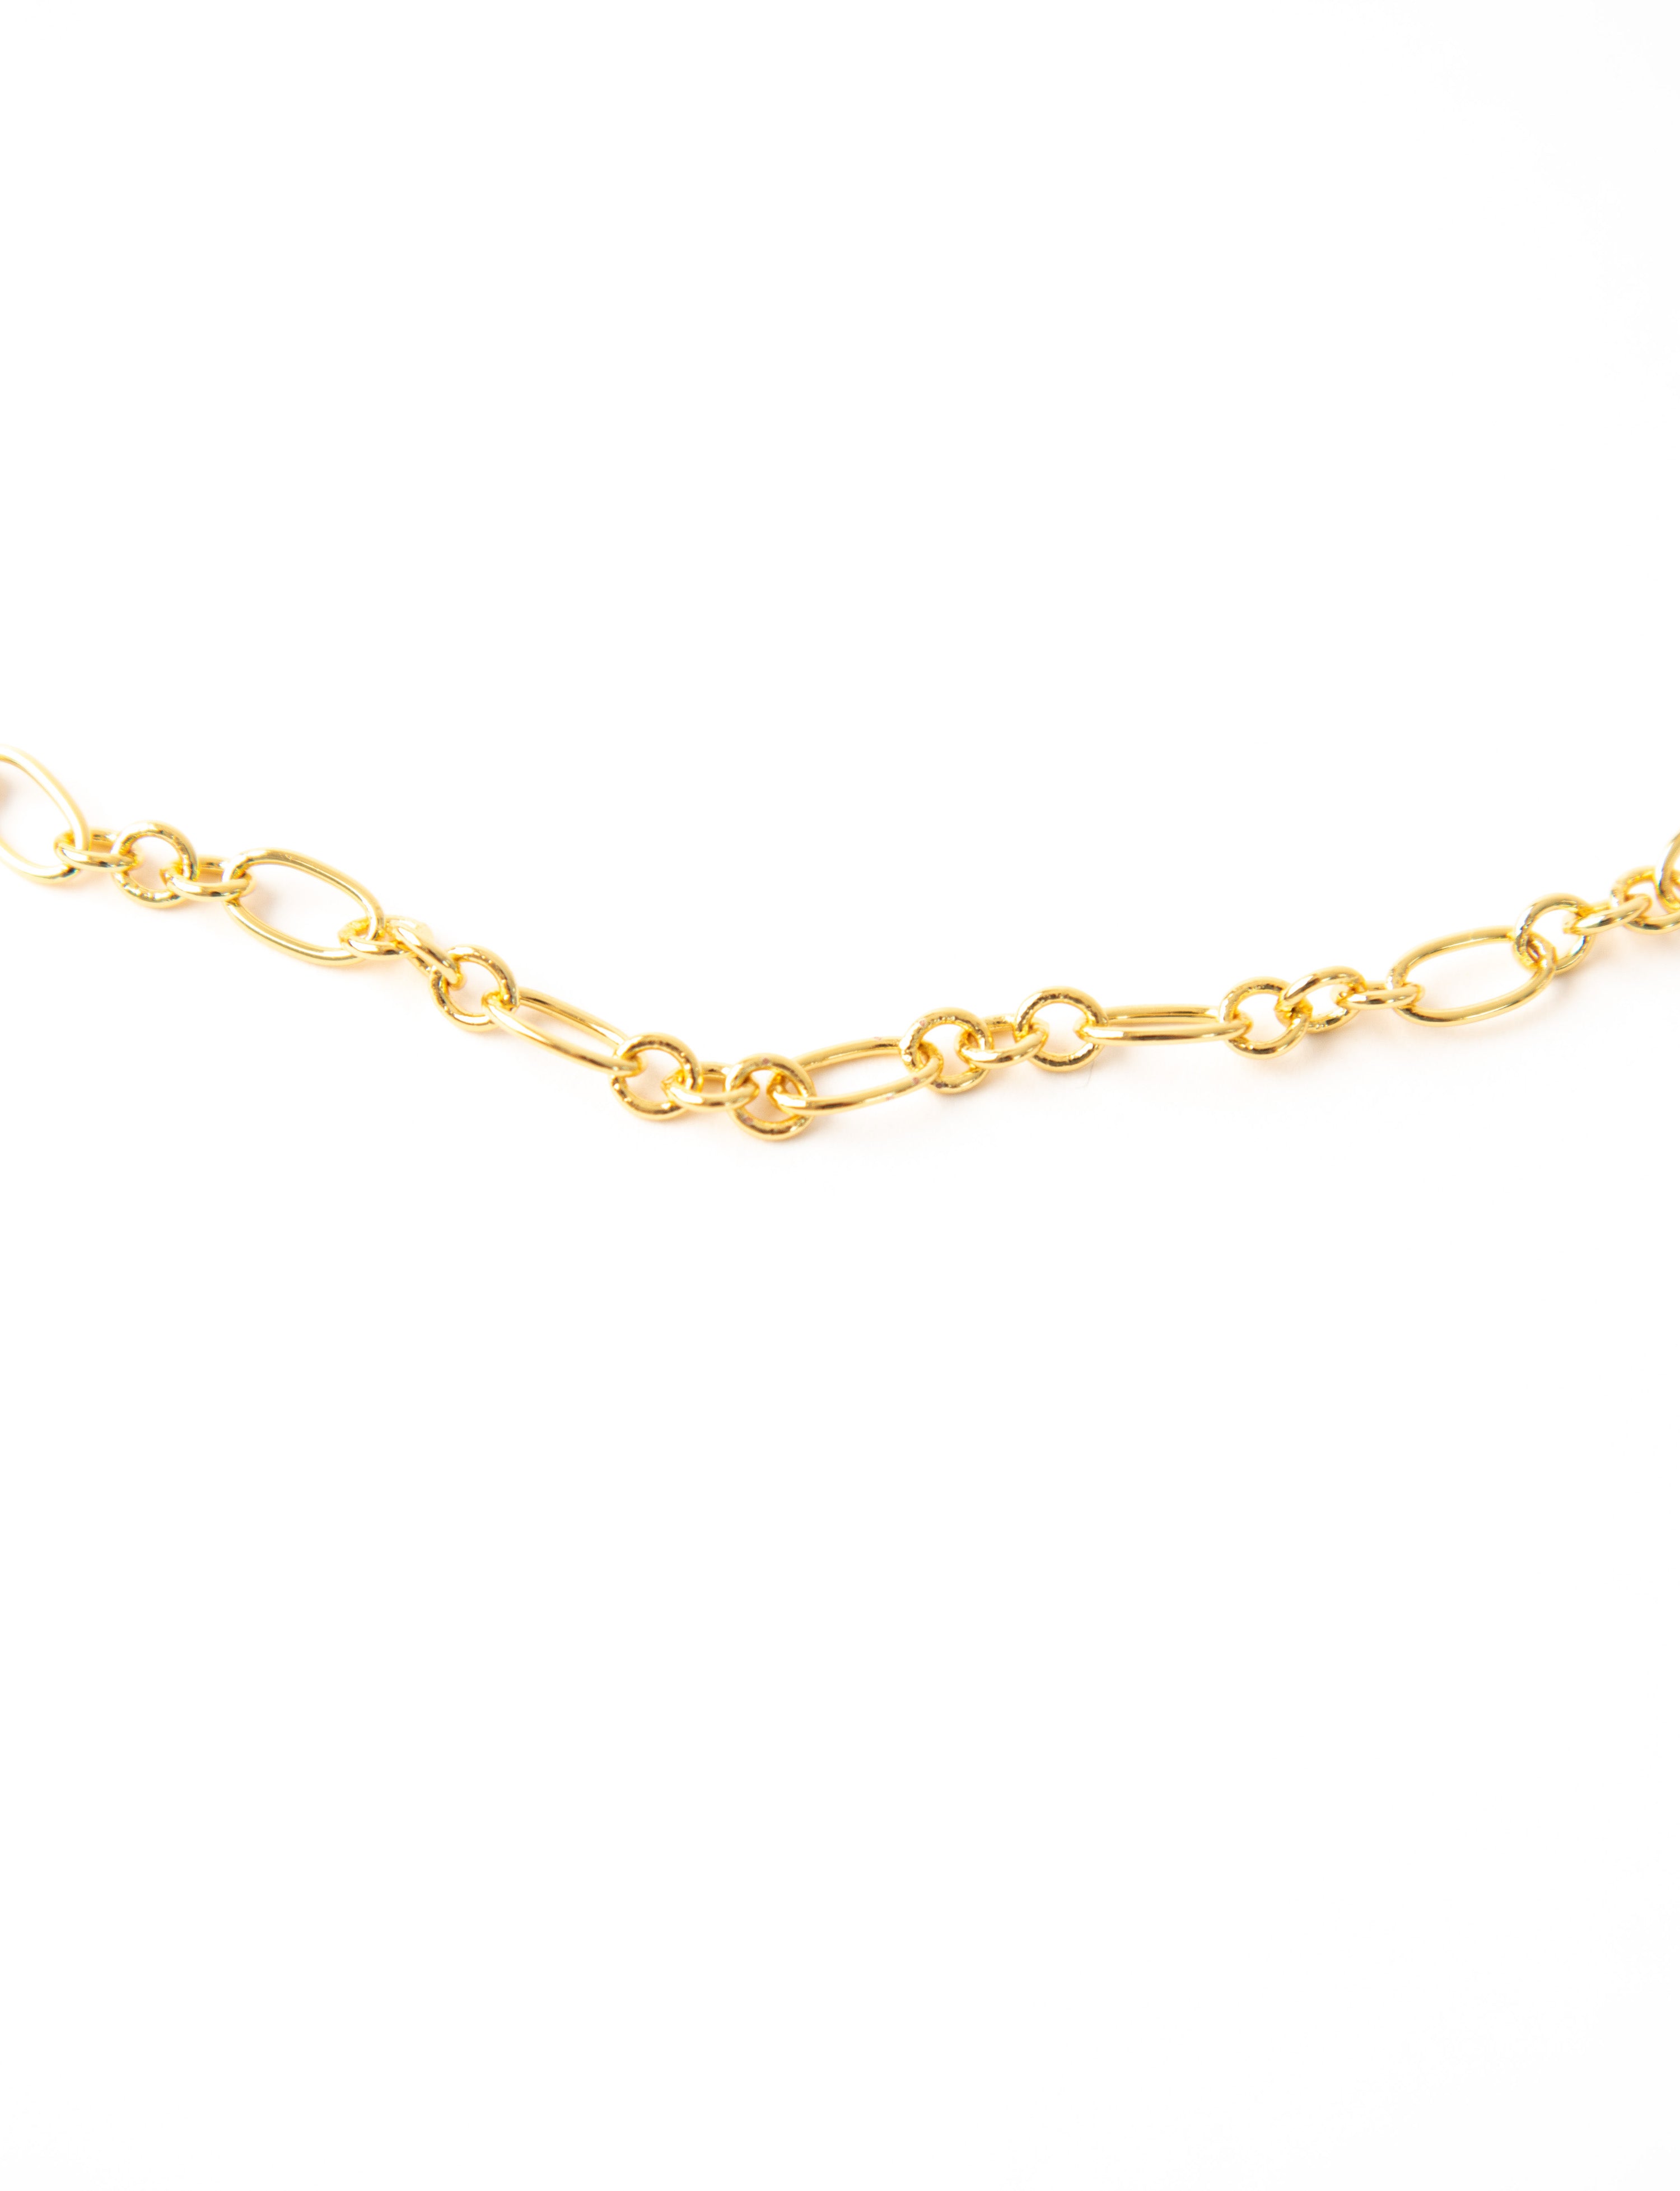 Pave Key Gold Choker Necklace